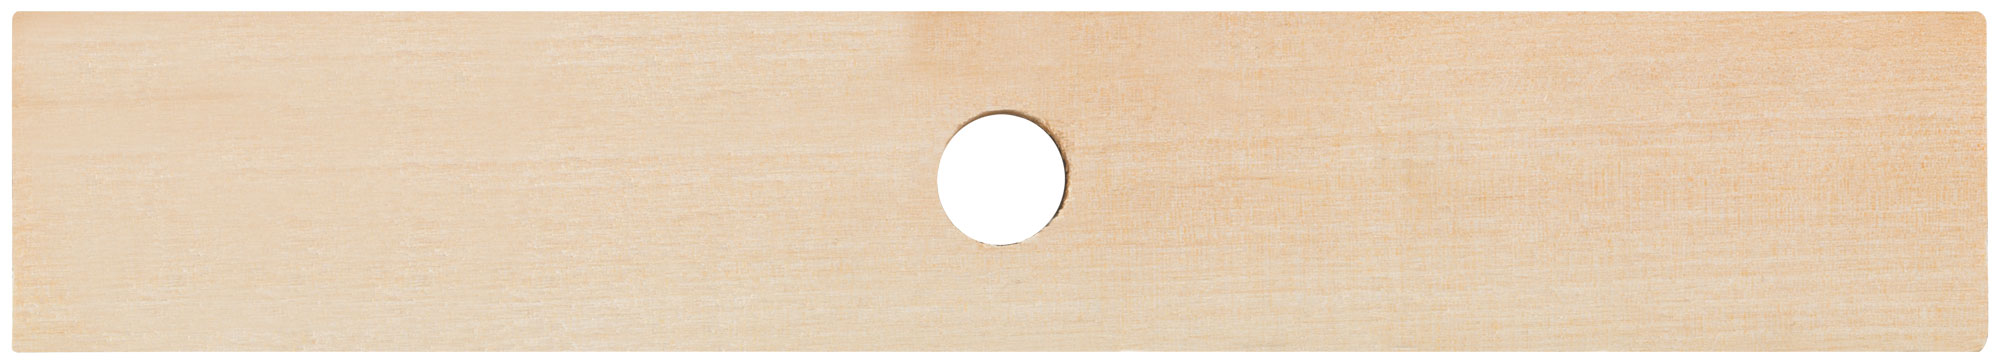 Щетка для пола деревянная, прямоугольная, 4-х рядная, 265 мм